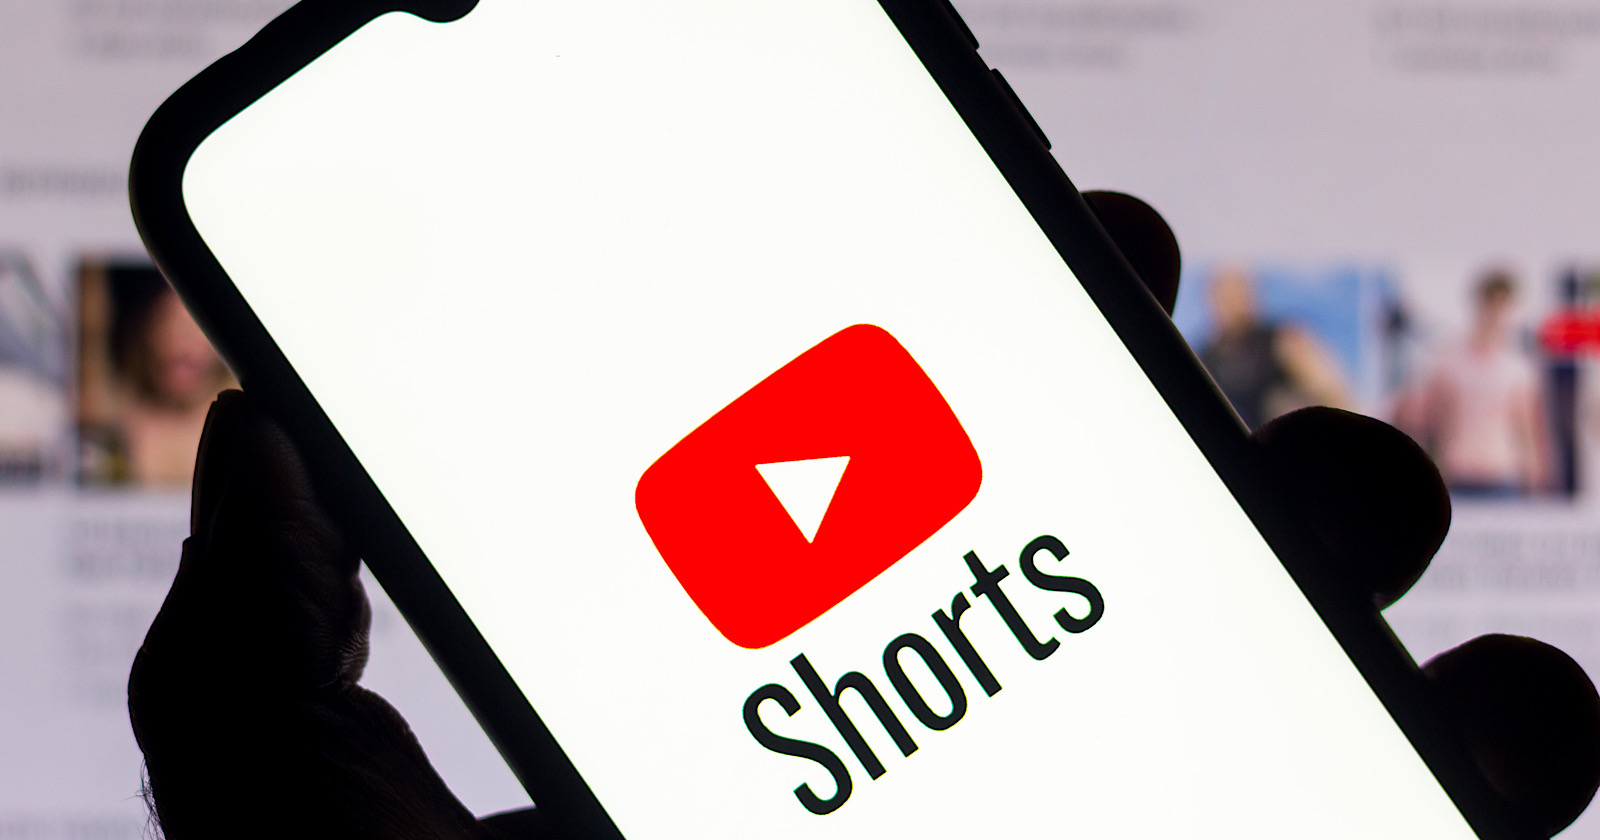 Youtube shorts 1. Youtube shorts. Логотип shorts ютуб. Значок ютуб Шортс. Yuotobe.shoyrts.